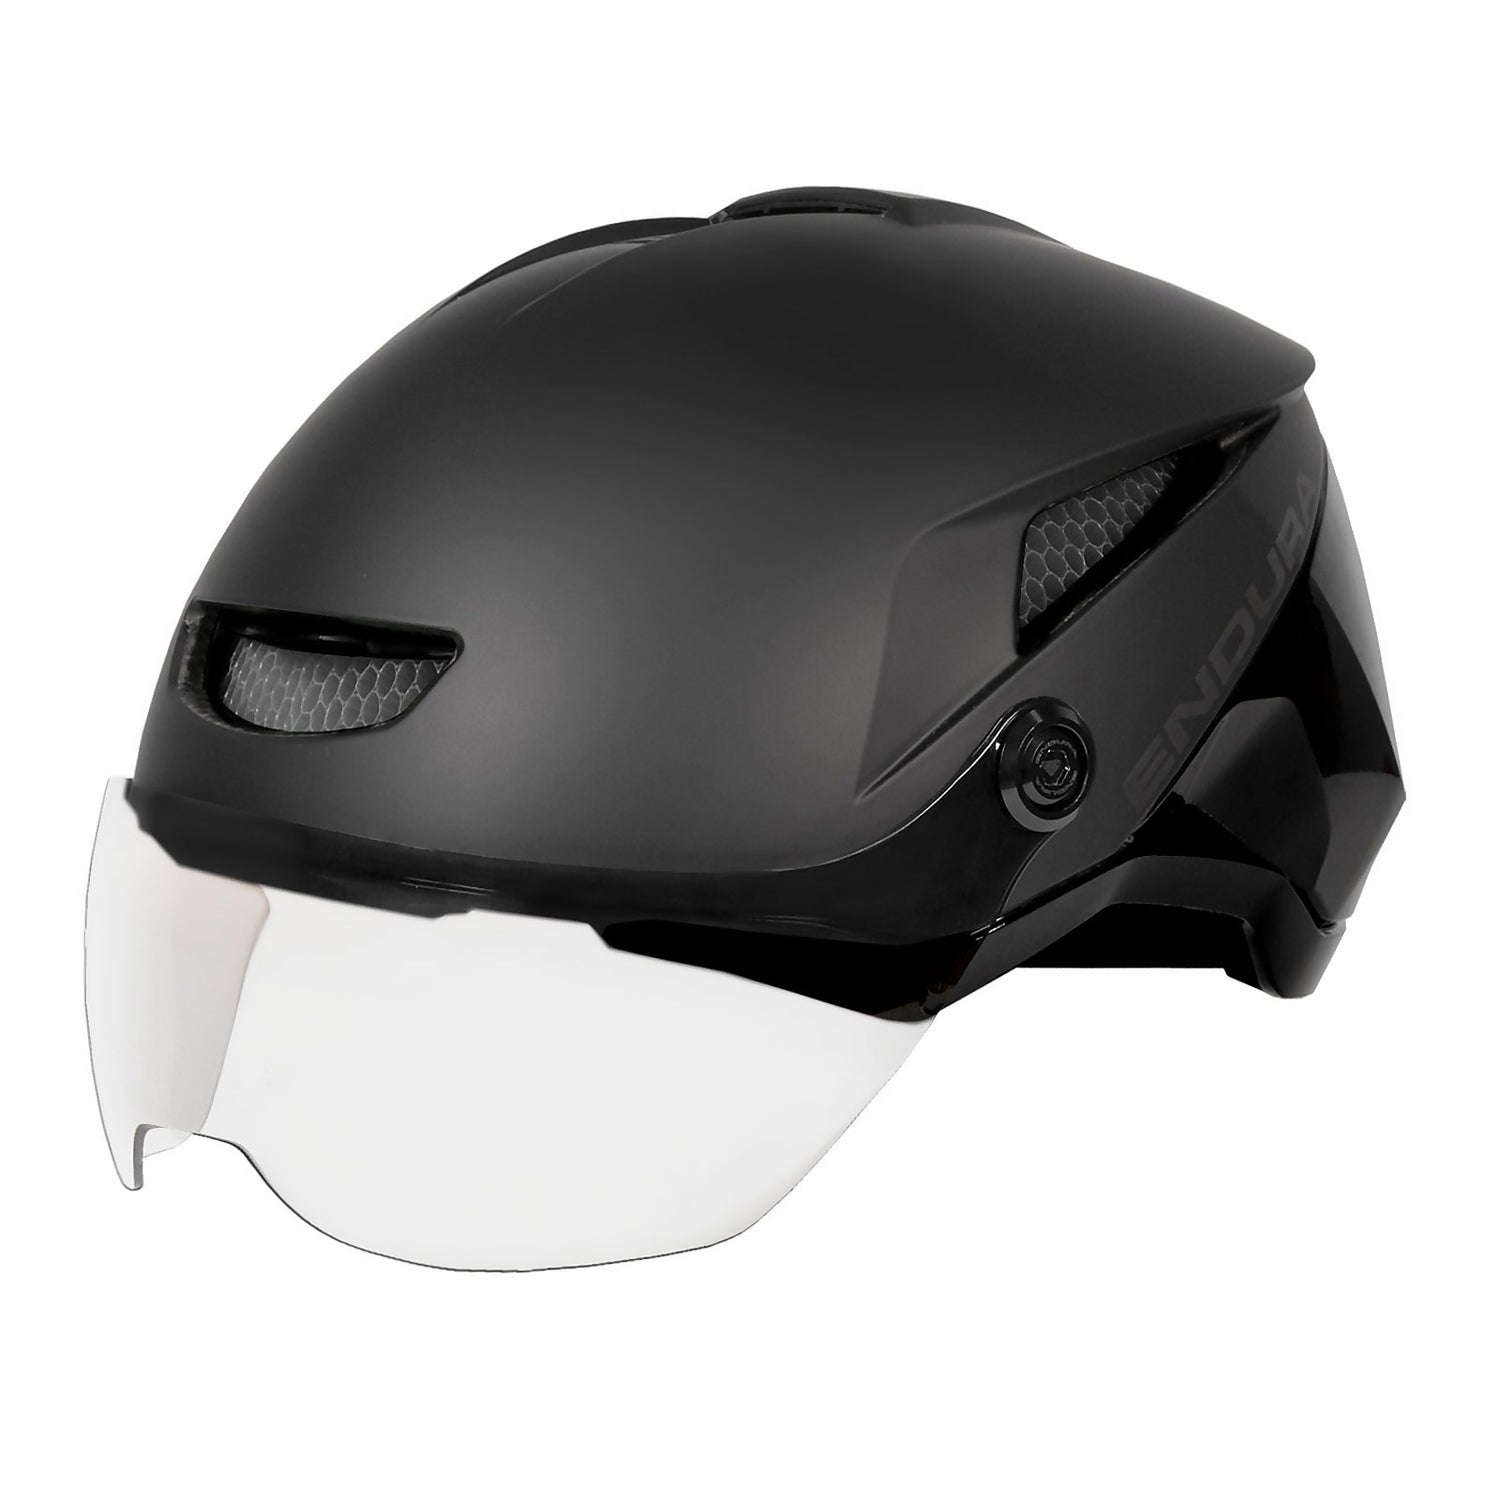 SpeedPedelec Visor Helmet - Black - S-M